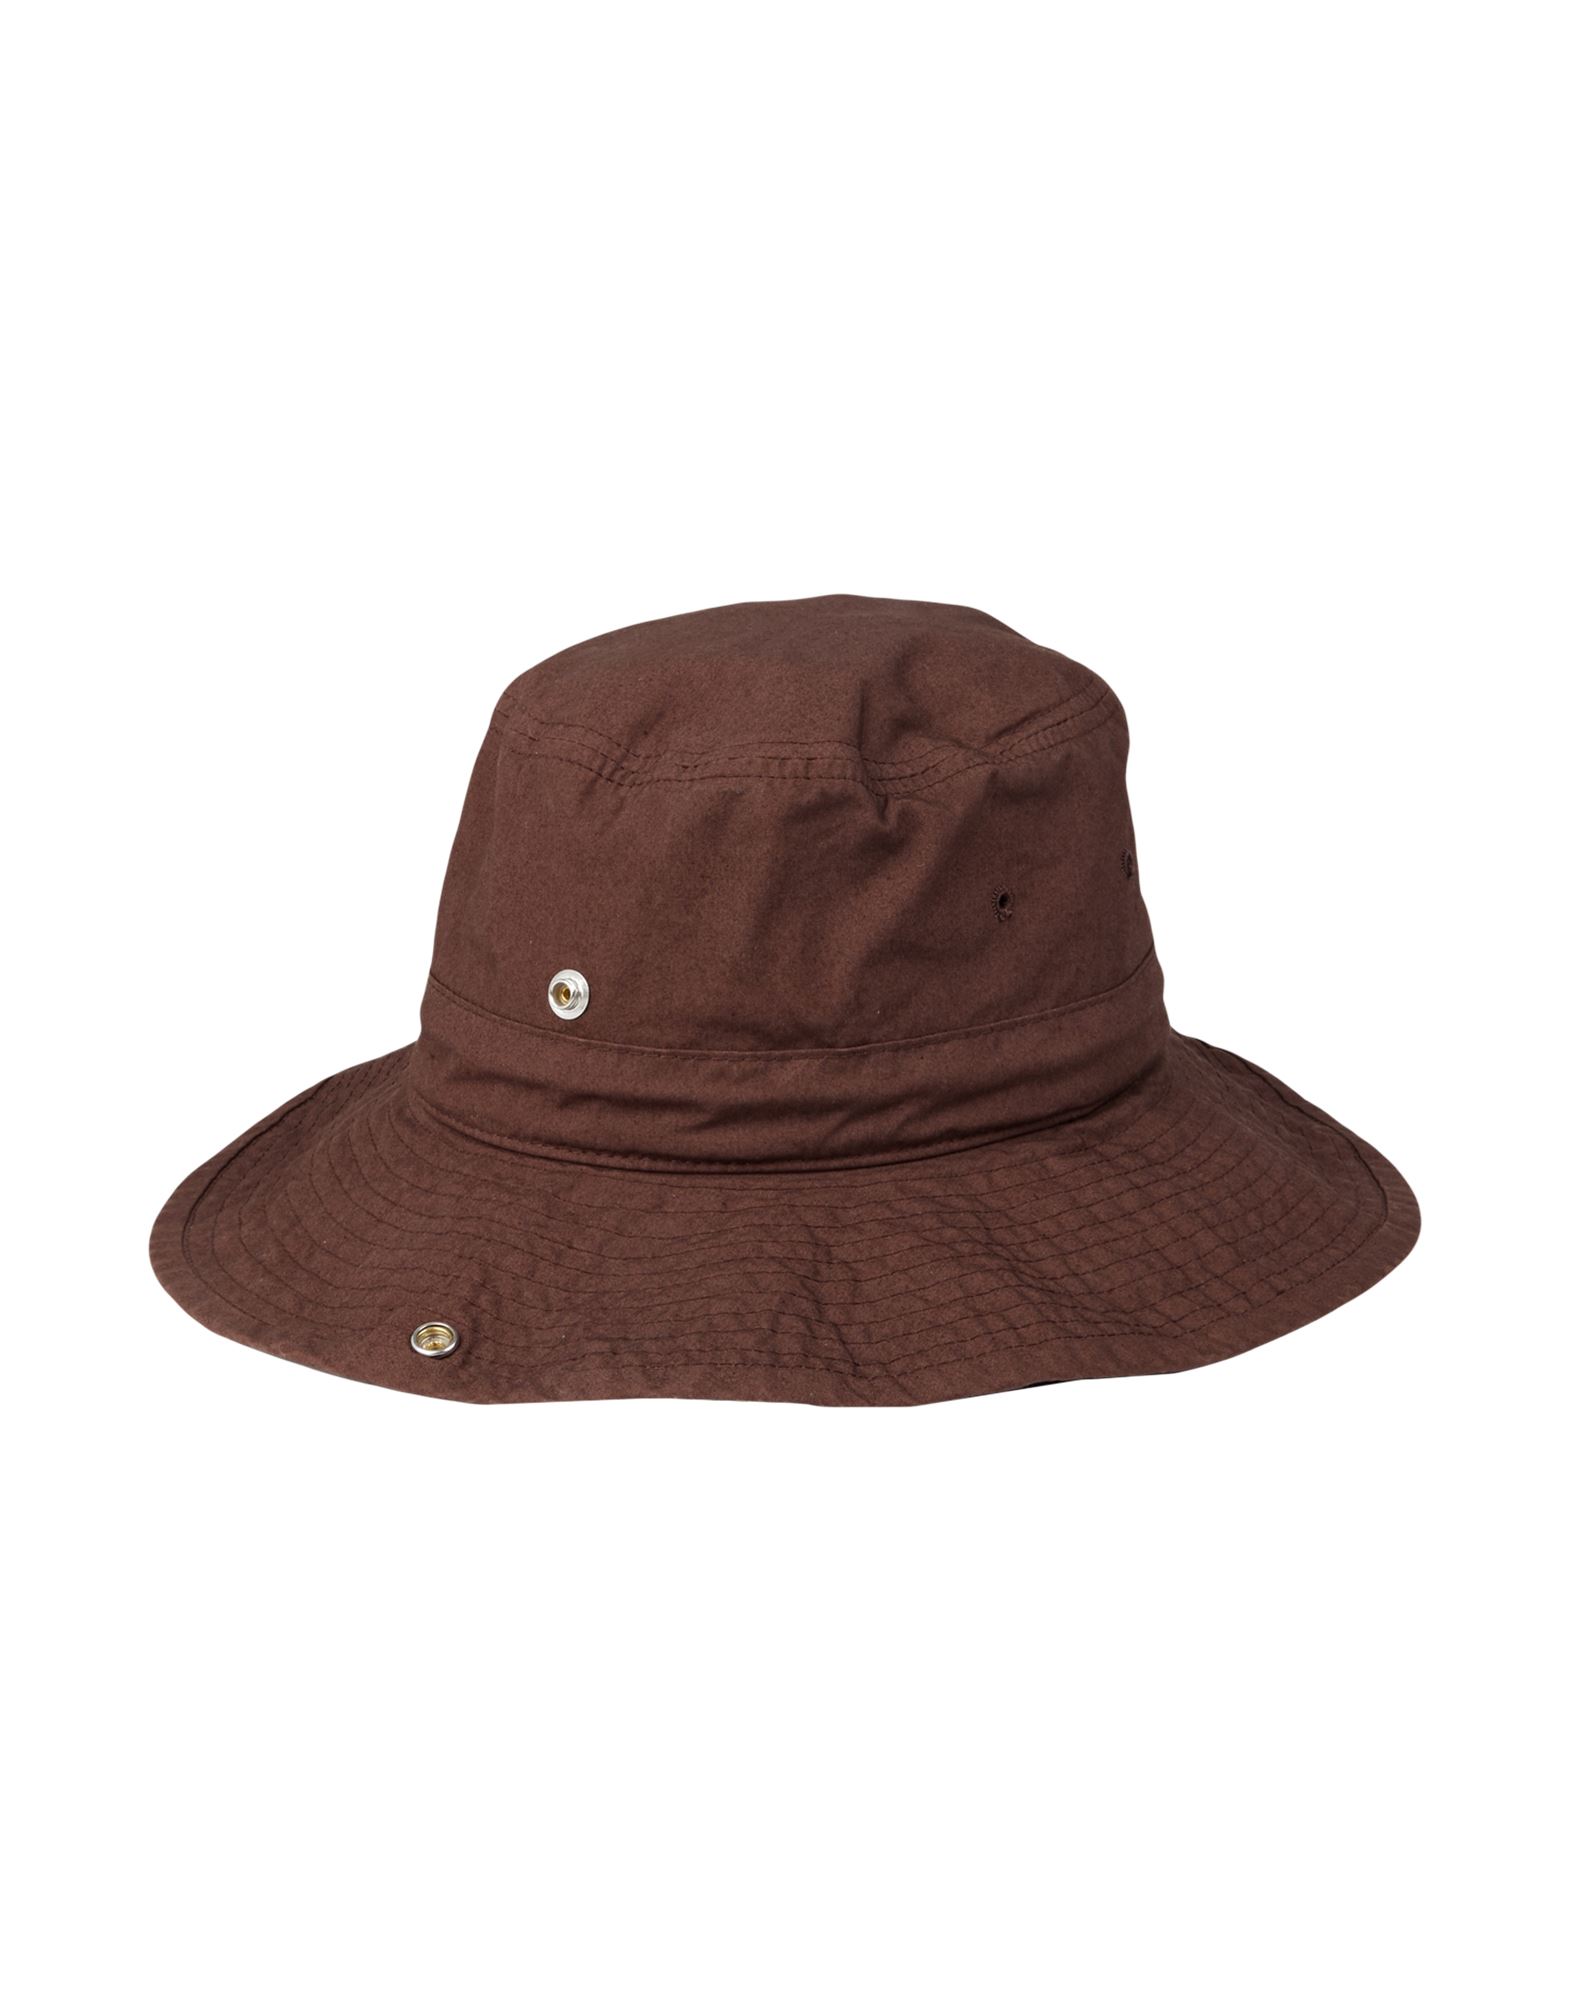 Jil Sander+ Woman Hat Cocoa Size Xl Cotton